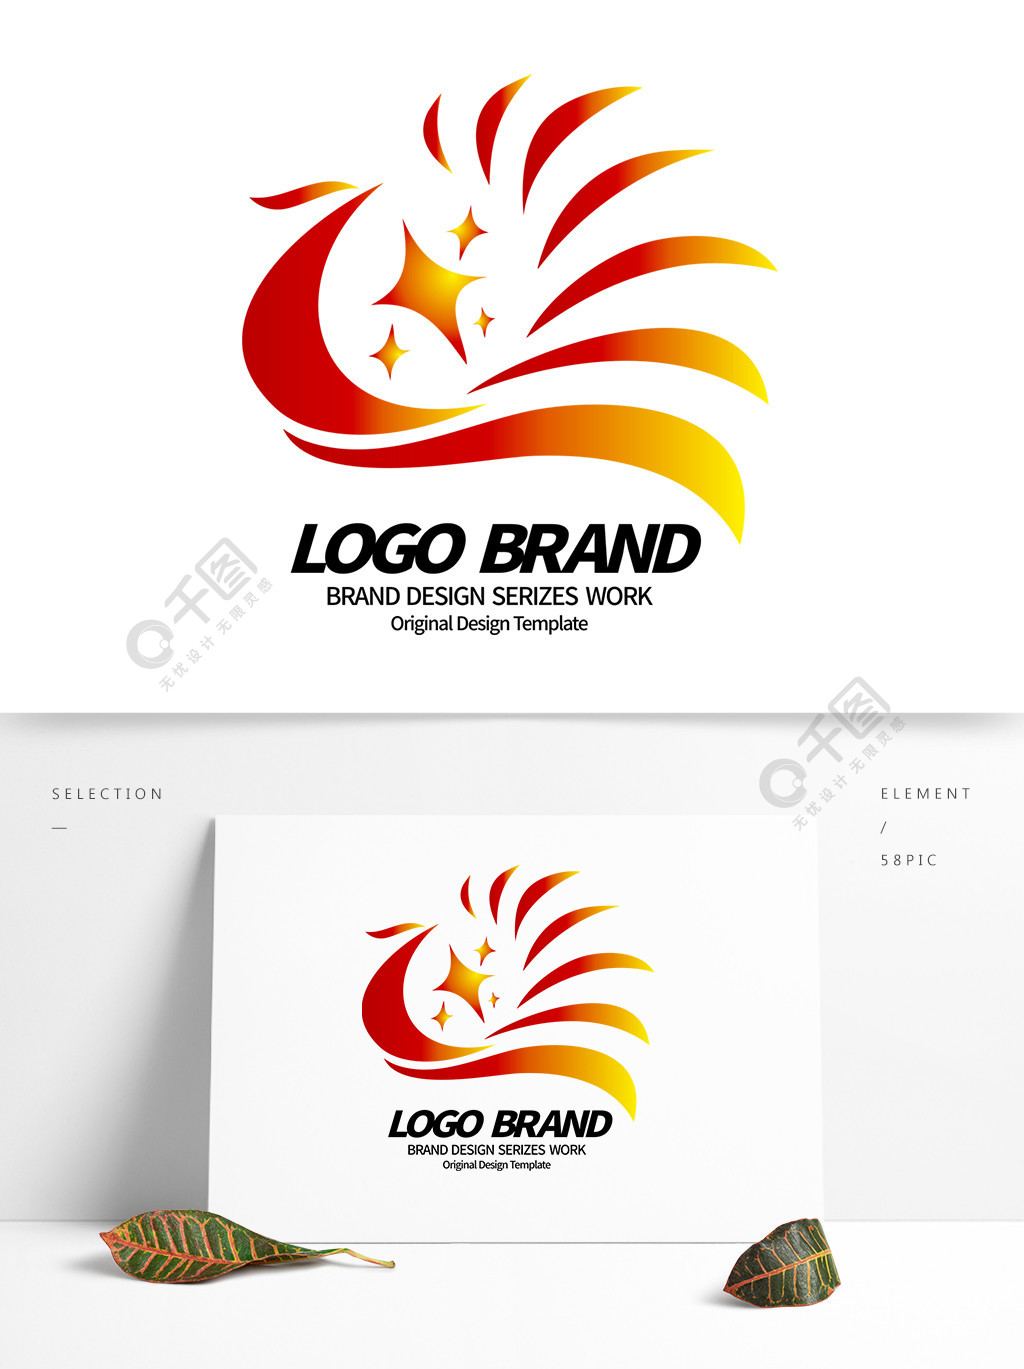 简约大气红黄凤凰彩带公司logo标志设计矢量图免费